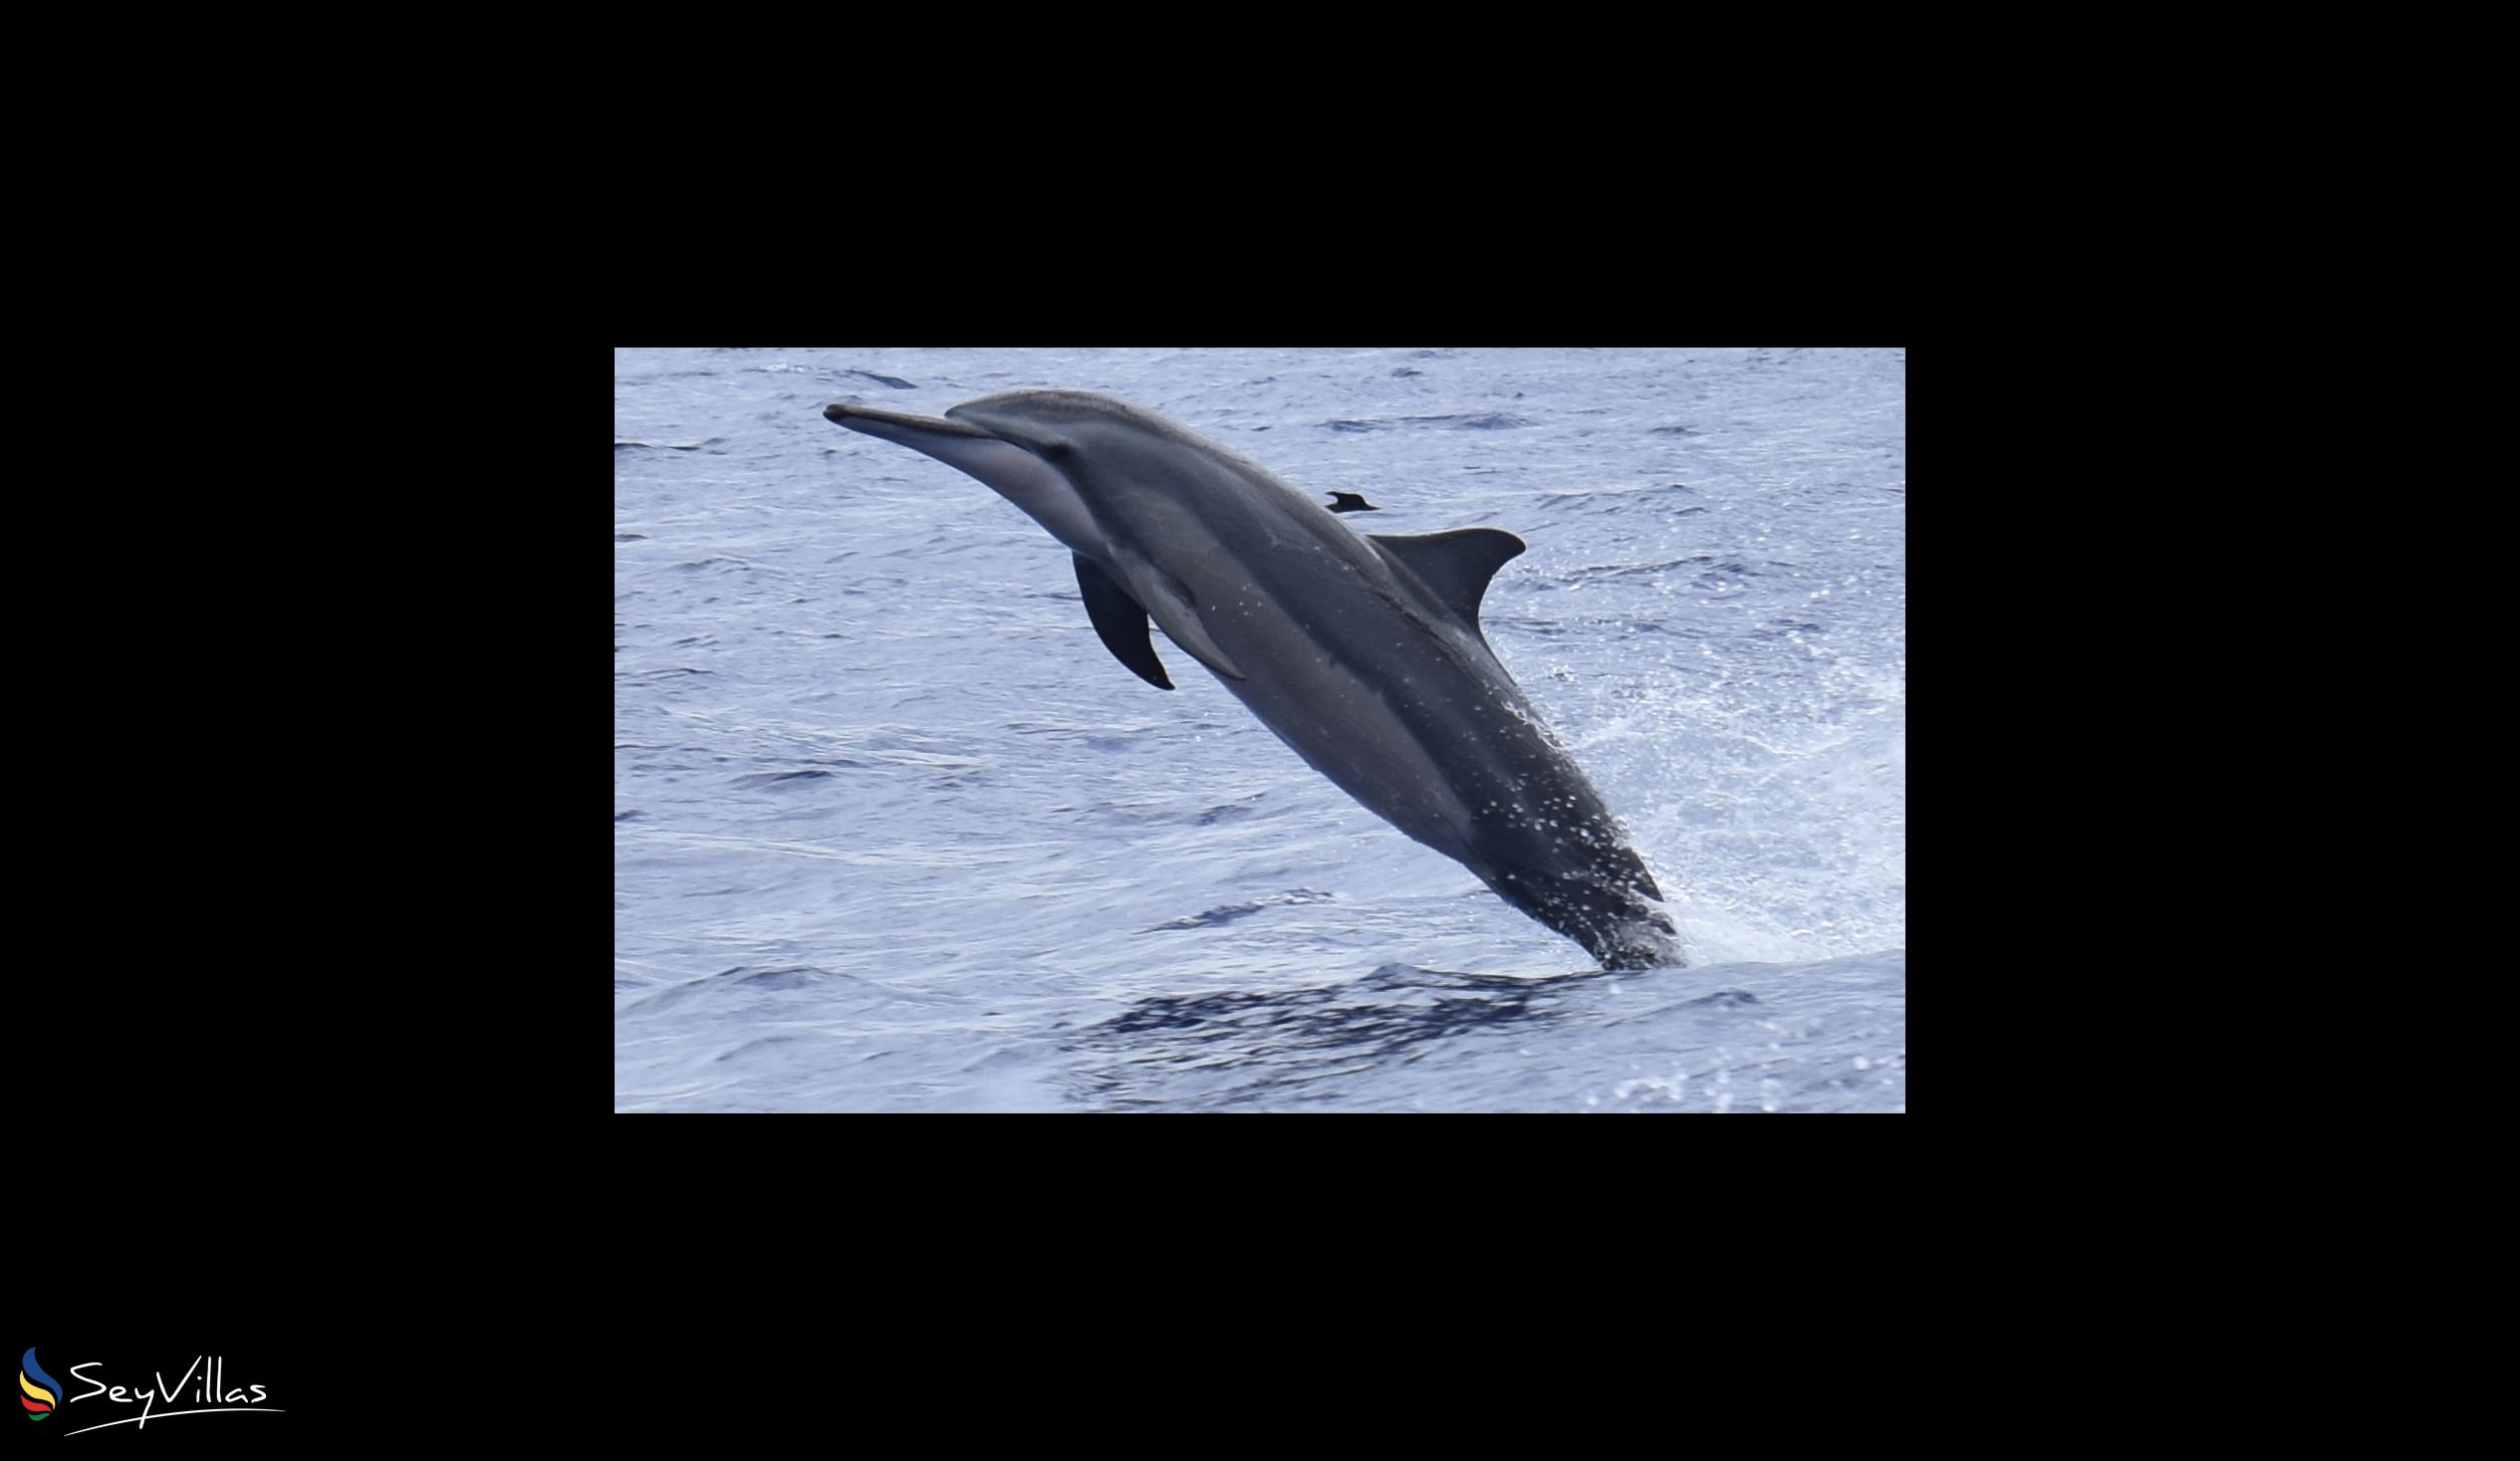 Foto 5: Silhouette Whales and Dolphins Expedition - Aussenbereich - Seychellen (Seychellen)